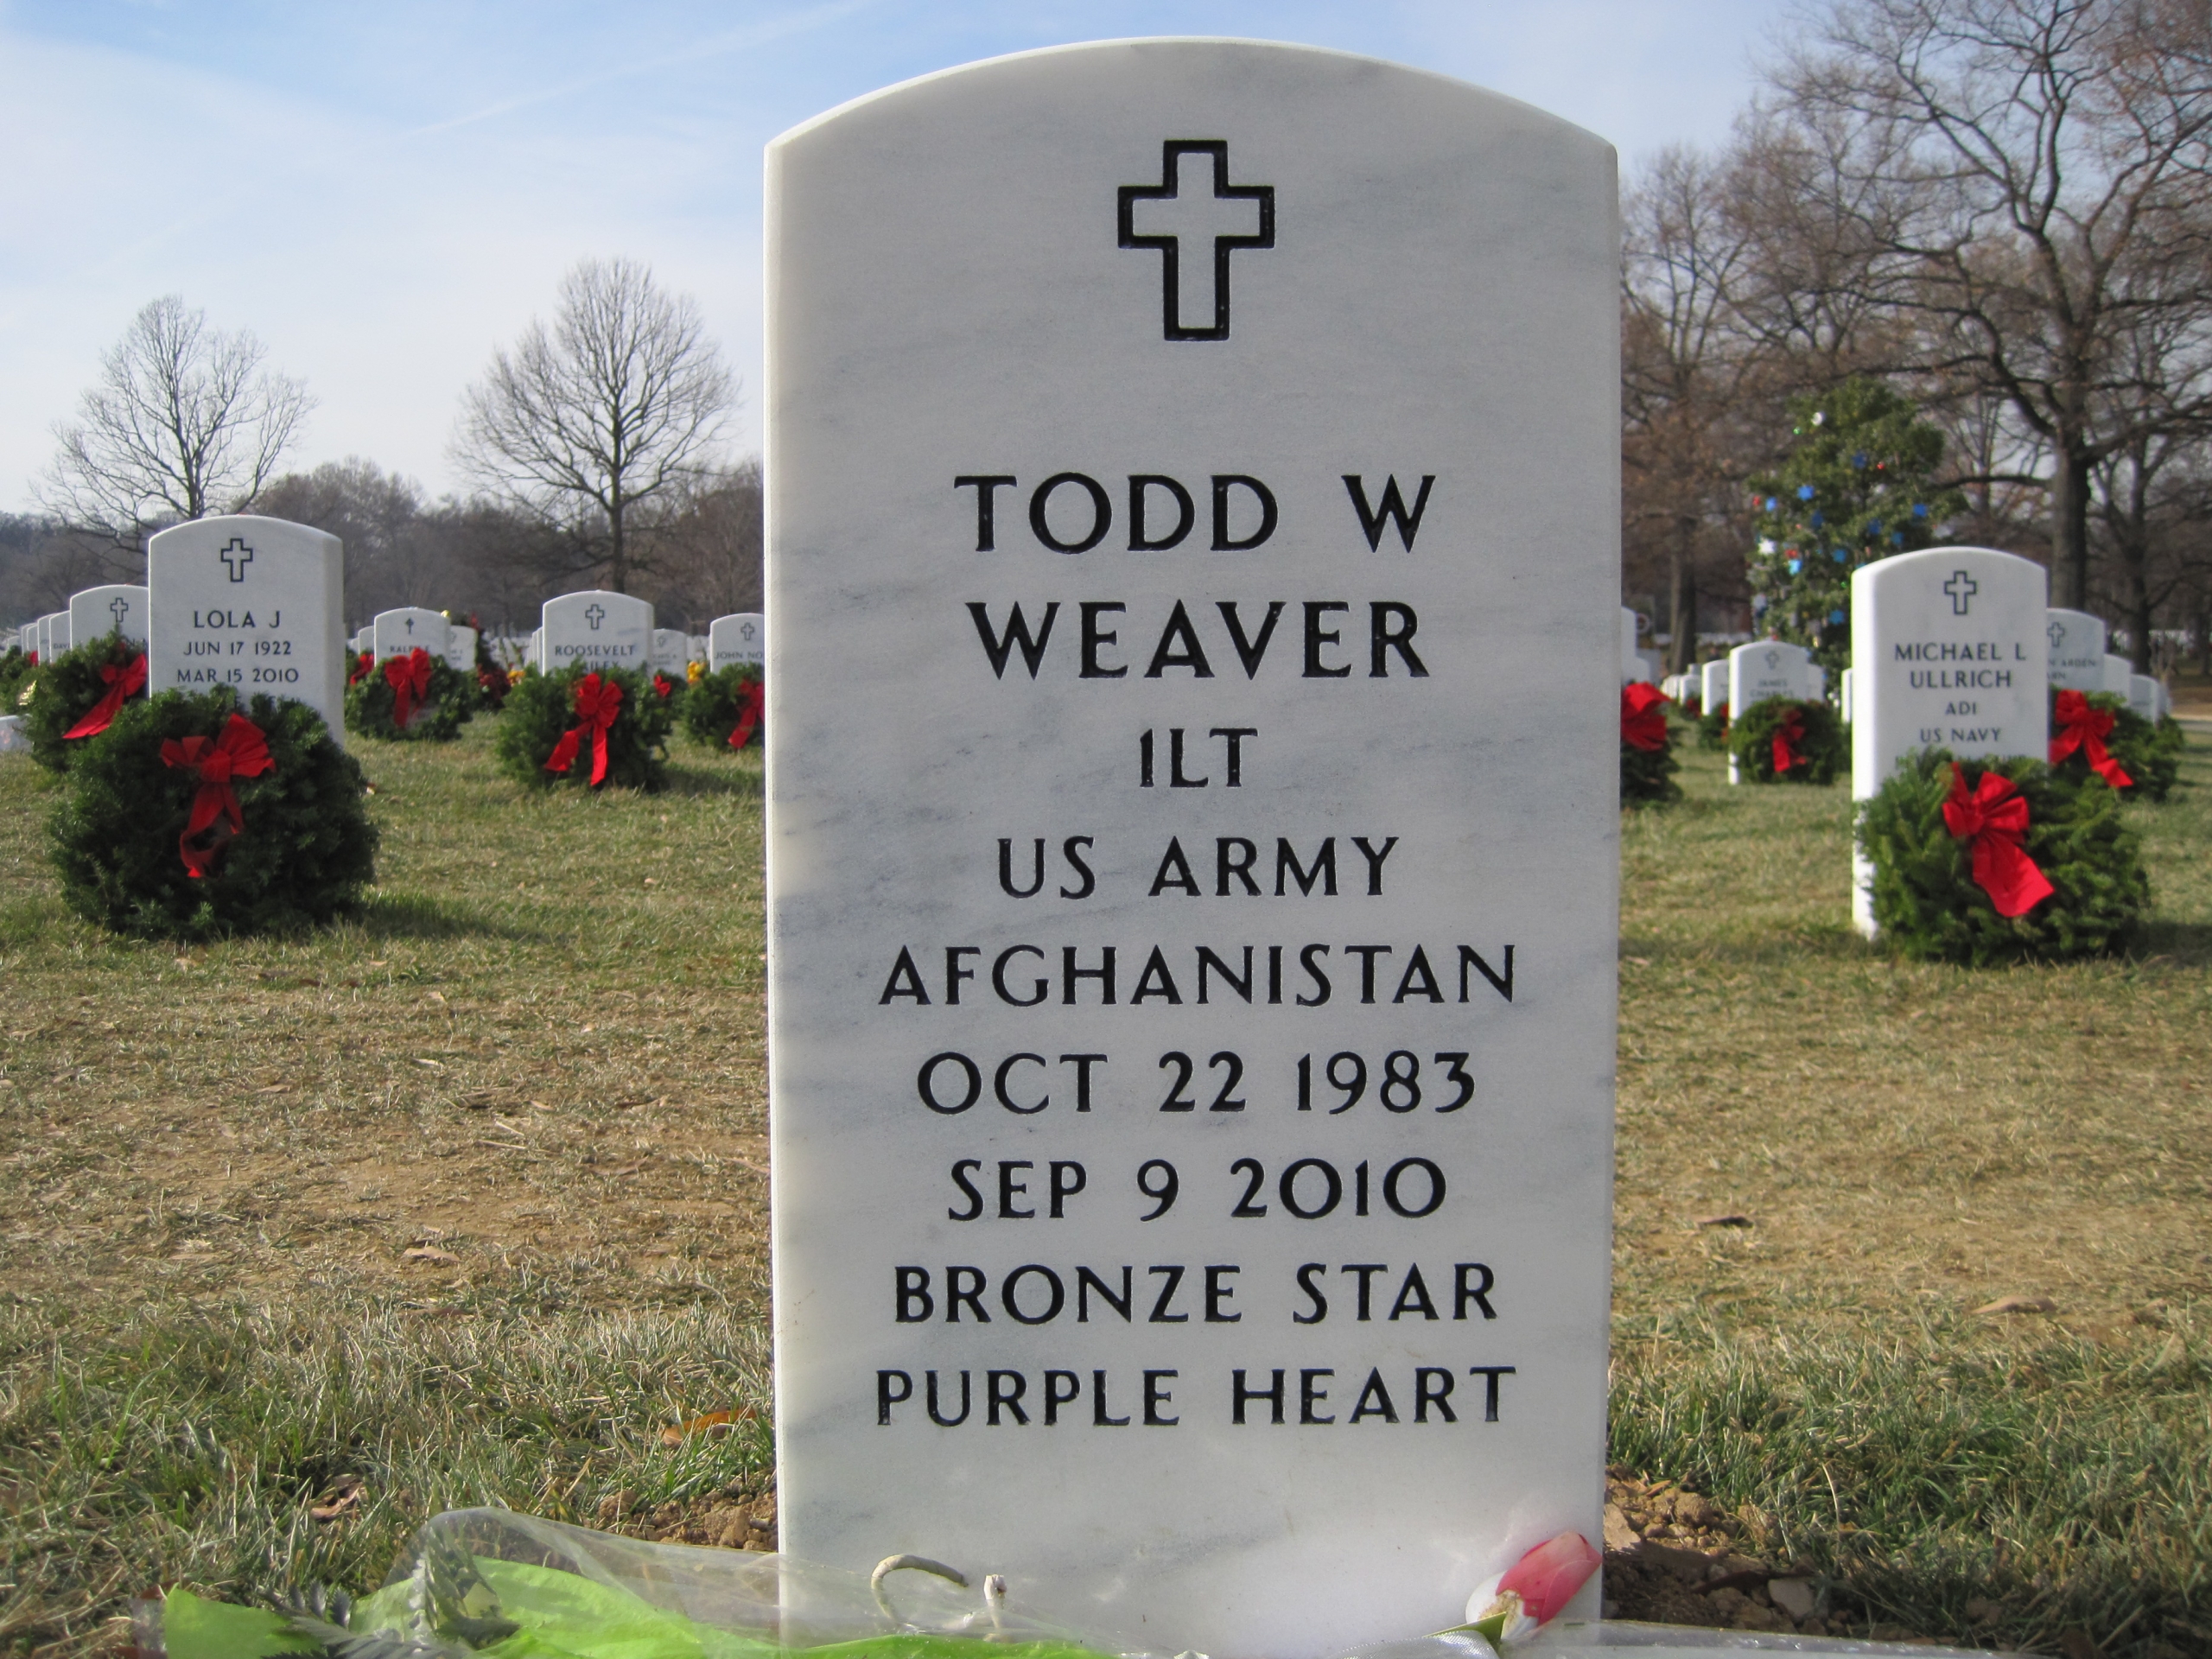 twweaver-gravesite-photo-by-eileen-horan-december-2010-004